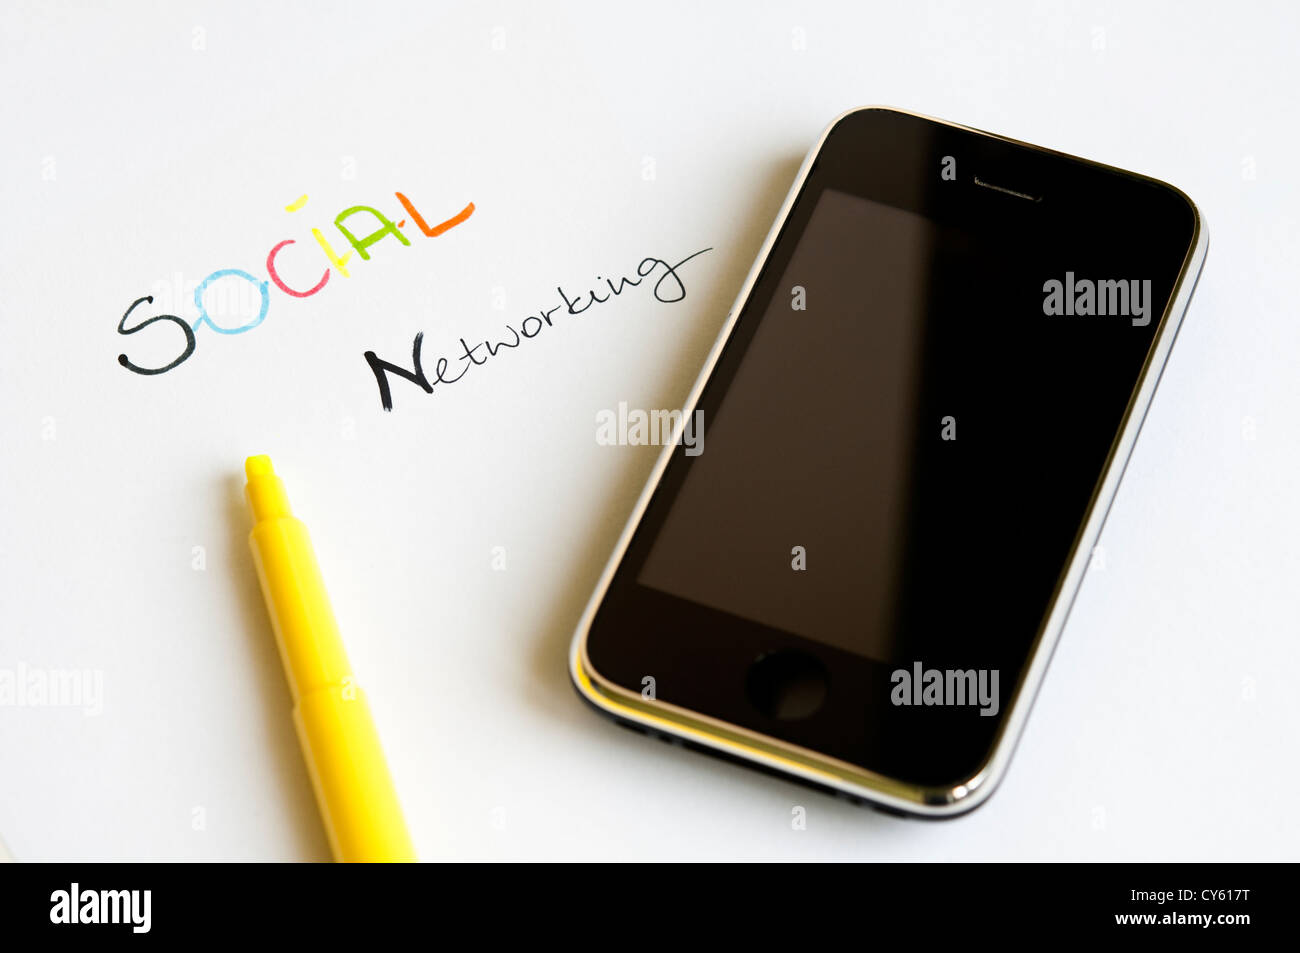 Concept de réseau social avec des lettres colorées, écran tactile moderne téléphone mobile et surligneur jaune Banque D'Images